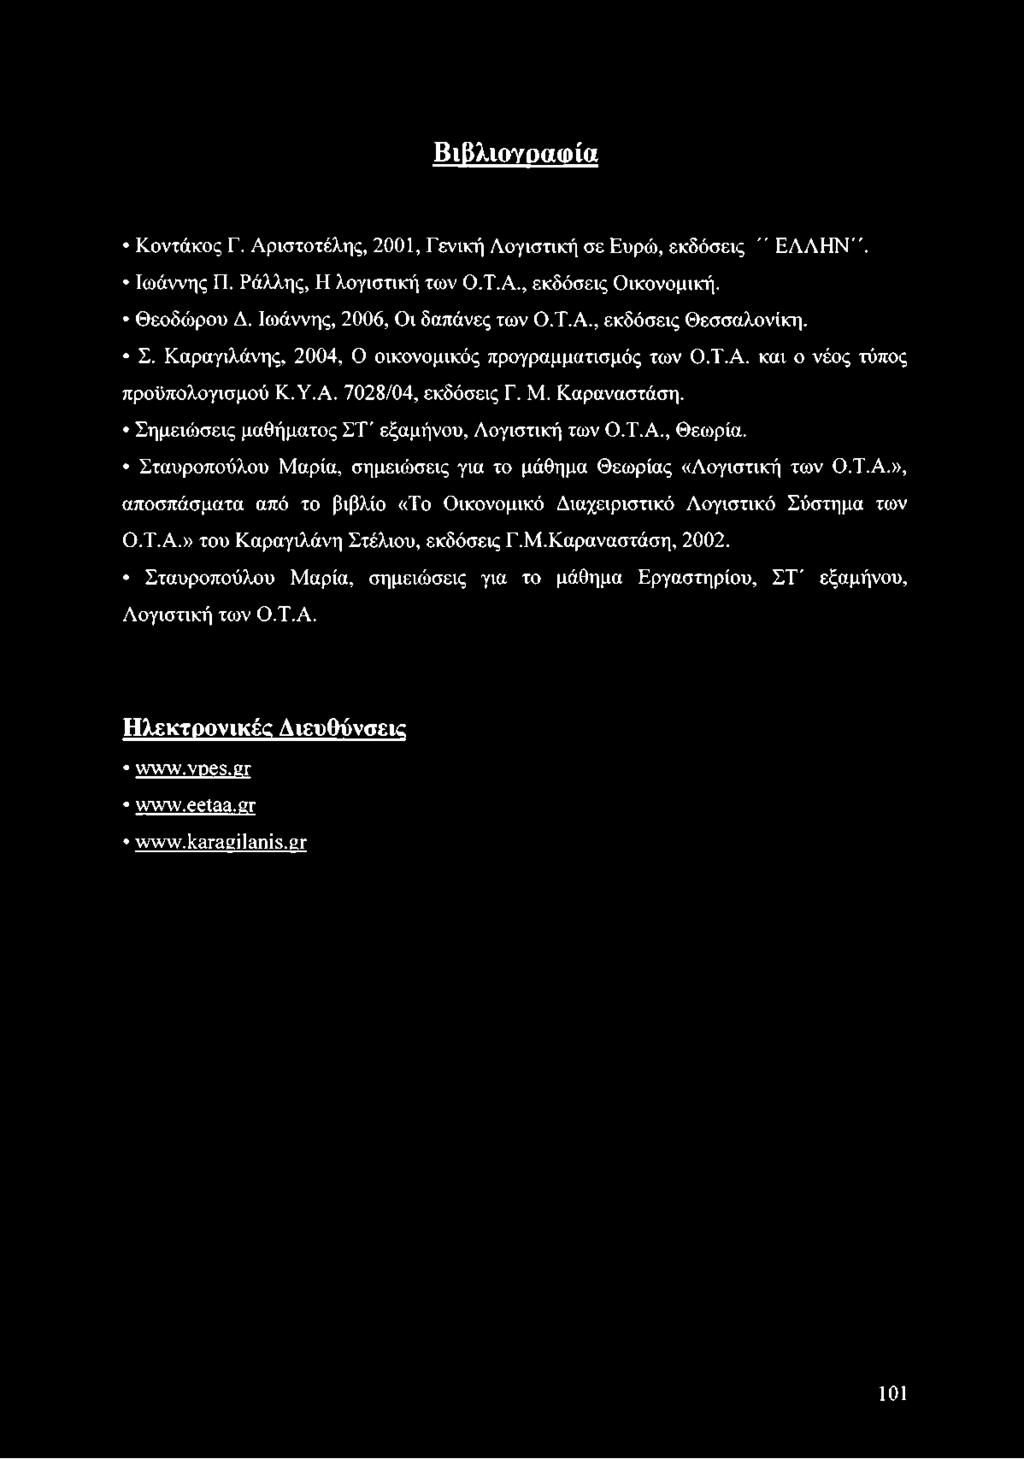 Σταυροπούλου Μαρία, σημειώσεις για το μάθημα Θεωρίας «Λογιστική των Ο.Τ.Α.», αποσπάσματα από το βιβλίο «Το Οικονομικό Διαχειριστικό Λογιστικό Σύστημα των Ο.Τ.Α.» του Καραγιλάνη Στέλιου, εκδόσεις Γ.Μ.Καραναστάση, 2002.